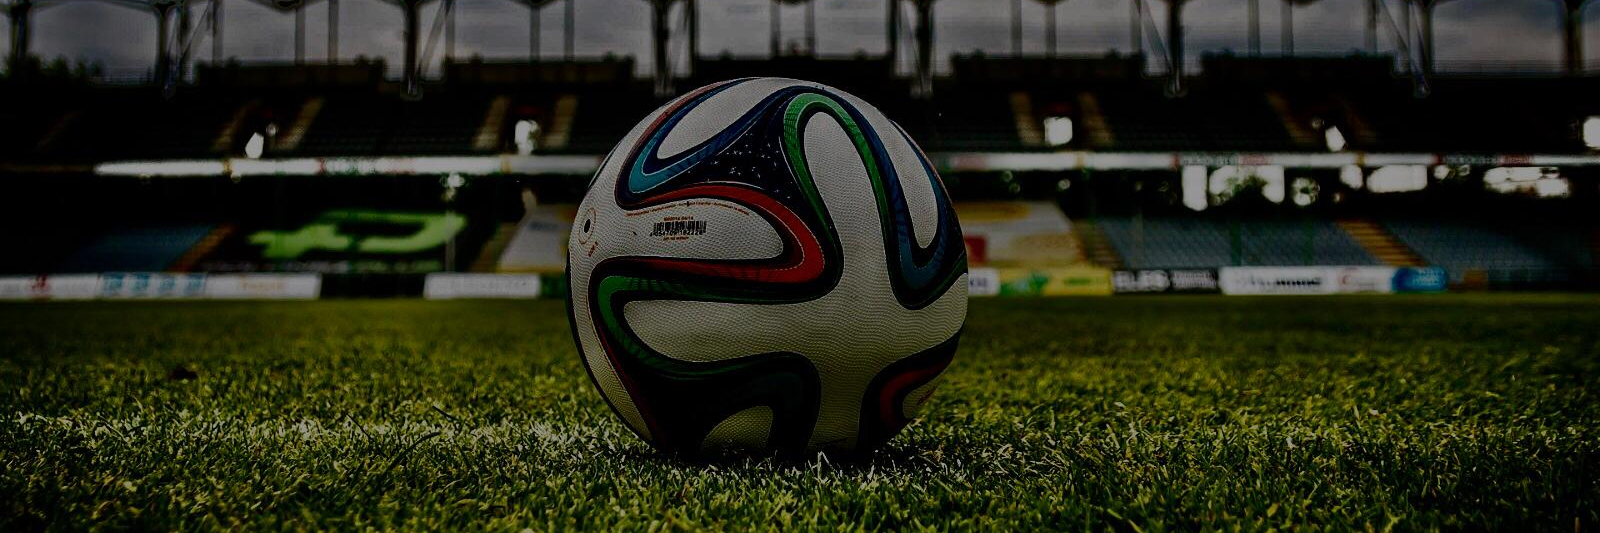 Marco Pellegrino: dalla racchetta al pallone da calcio   